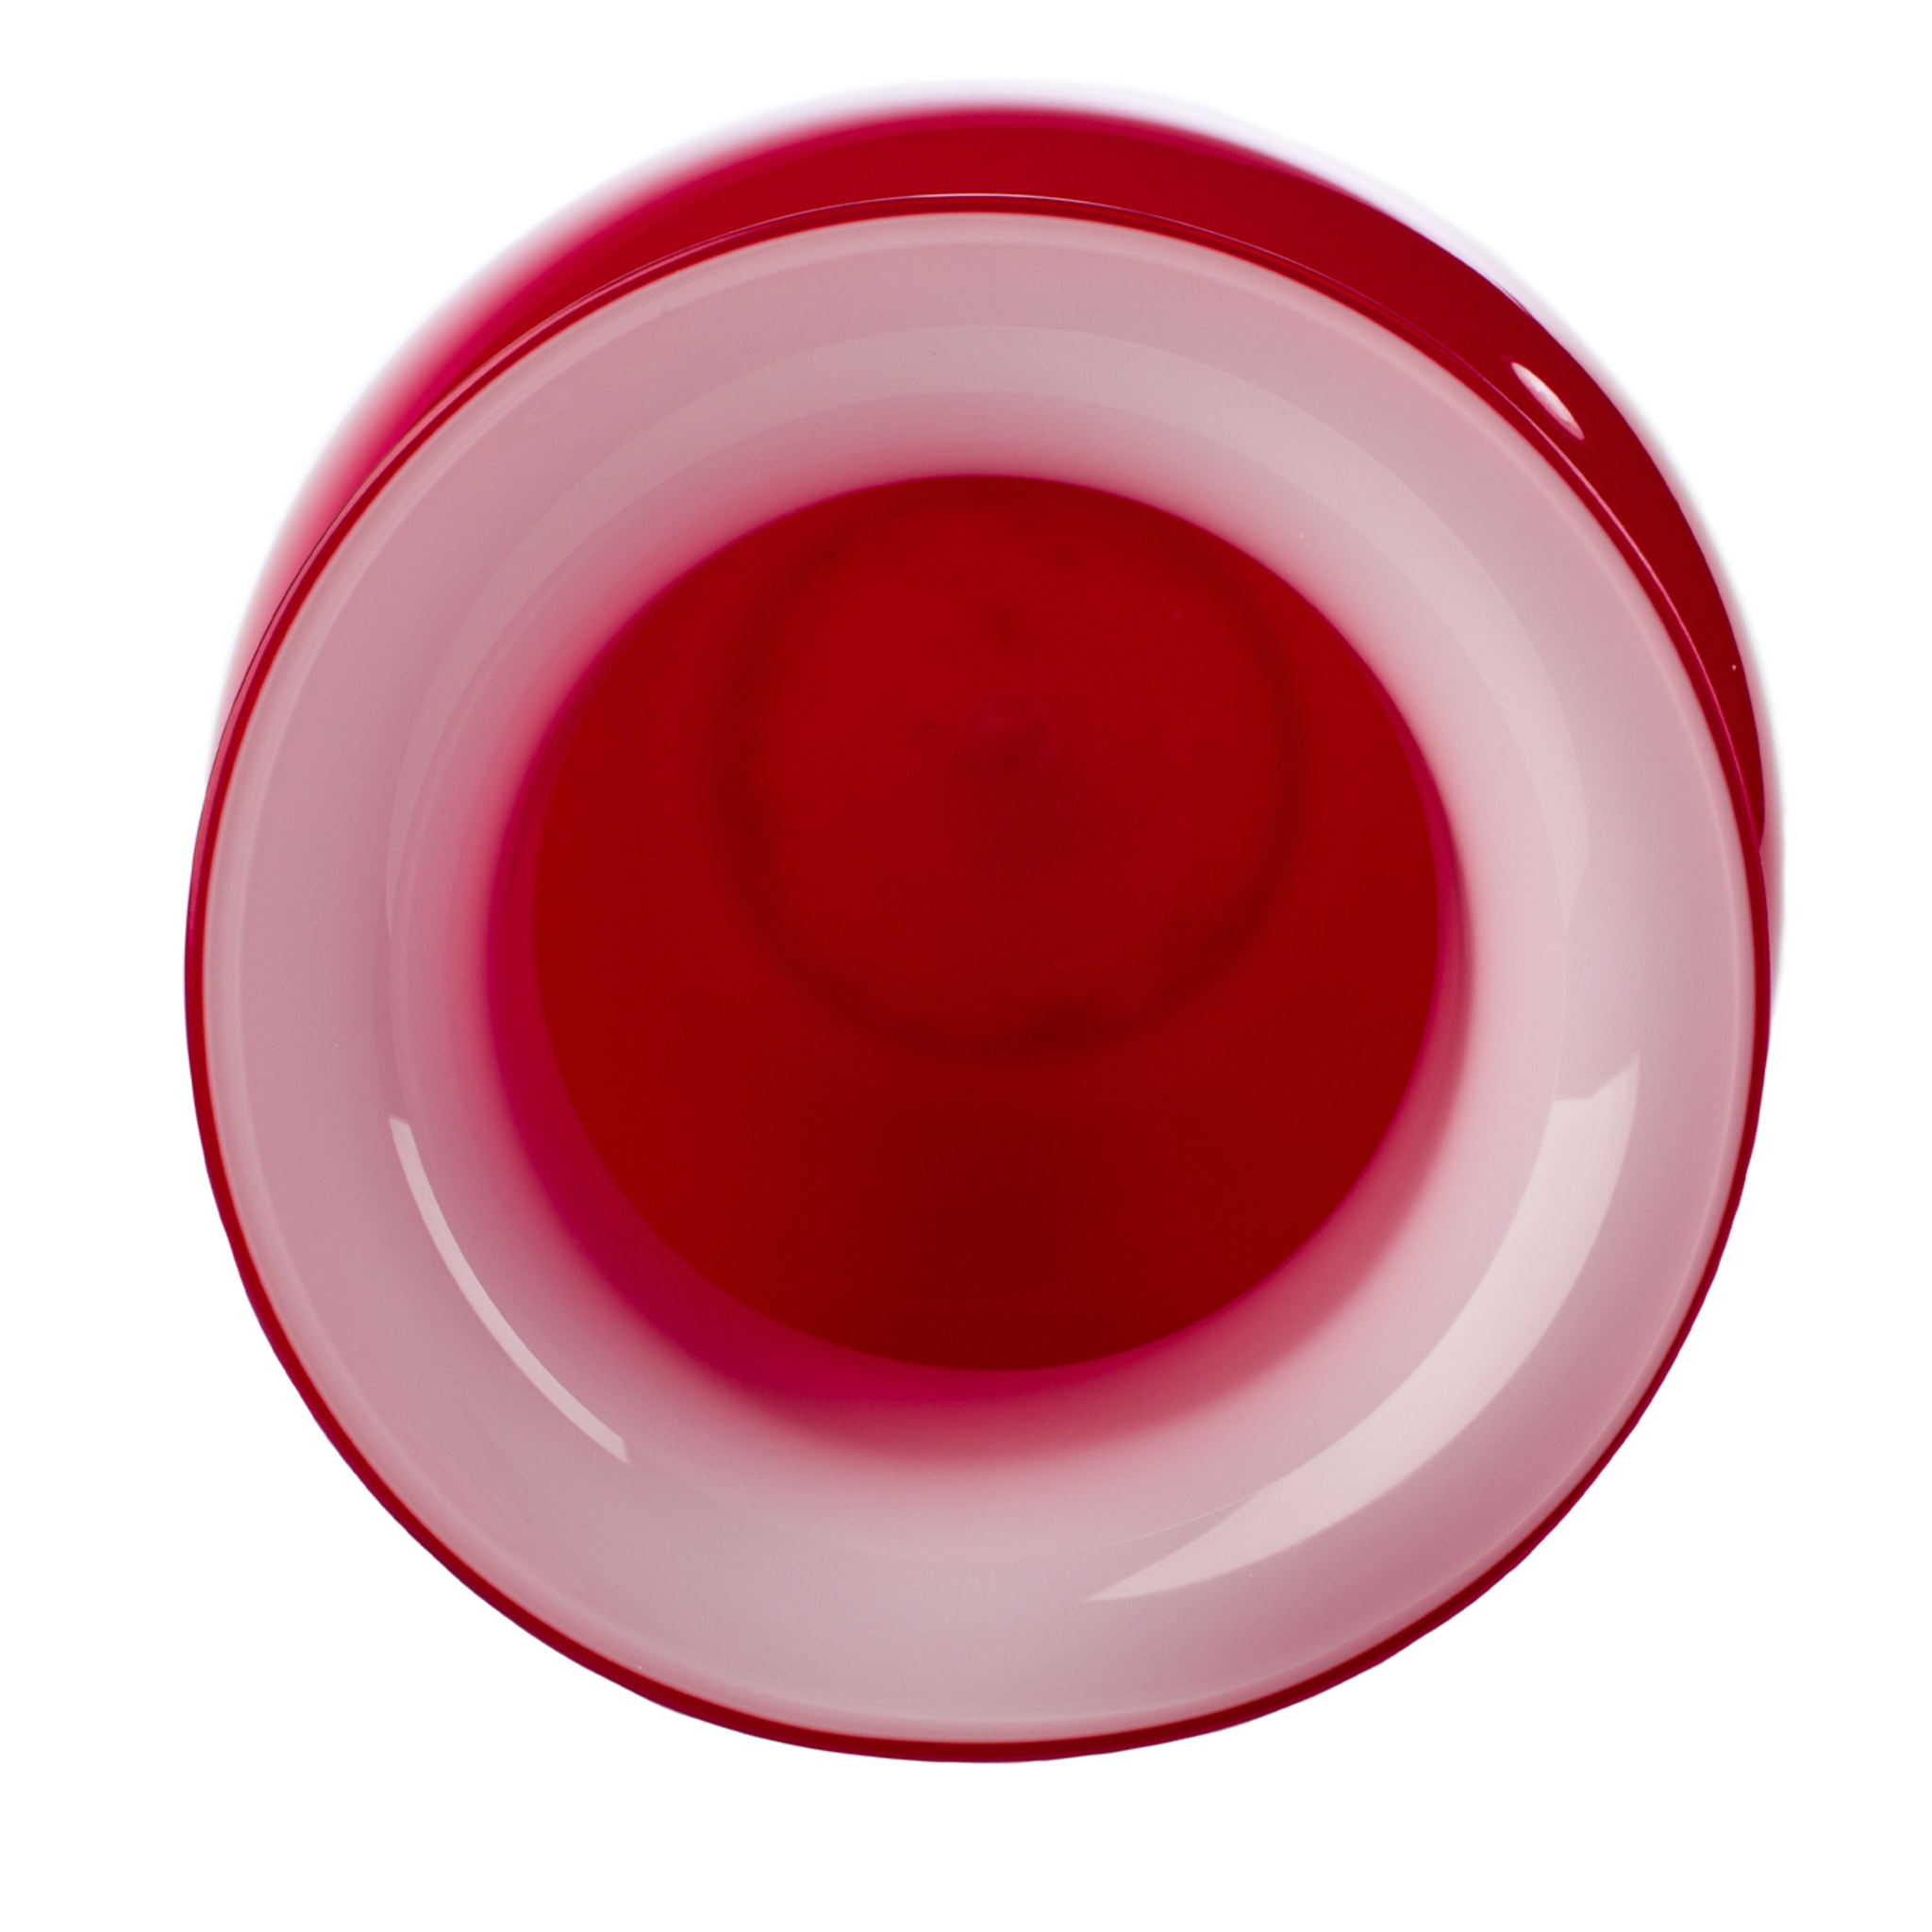 Demajo Incamiciato Red and White Vase - Alternative view 2